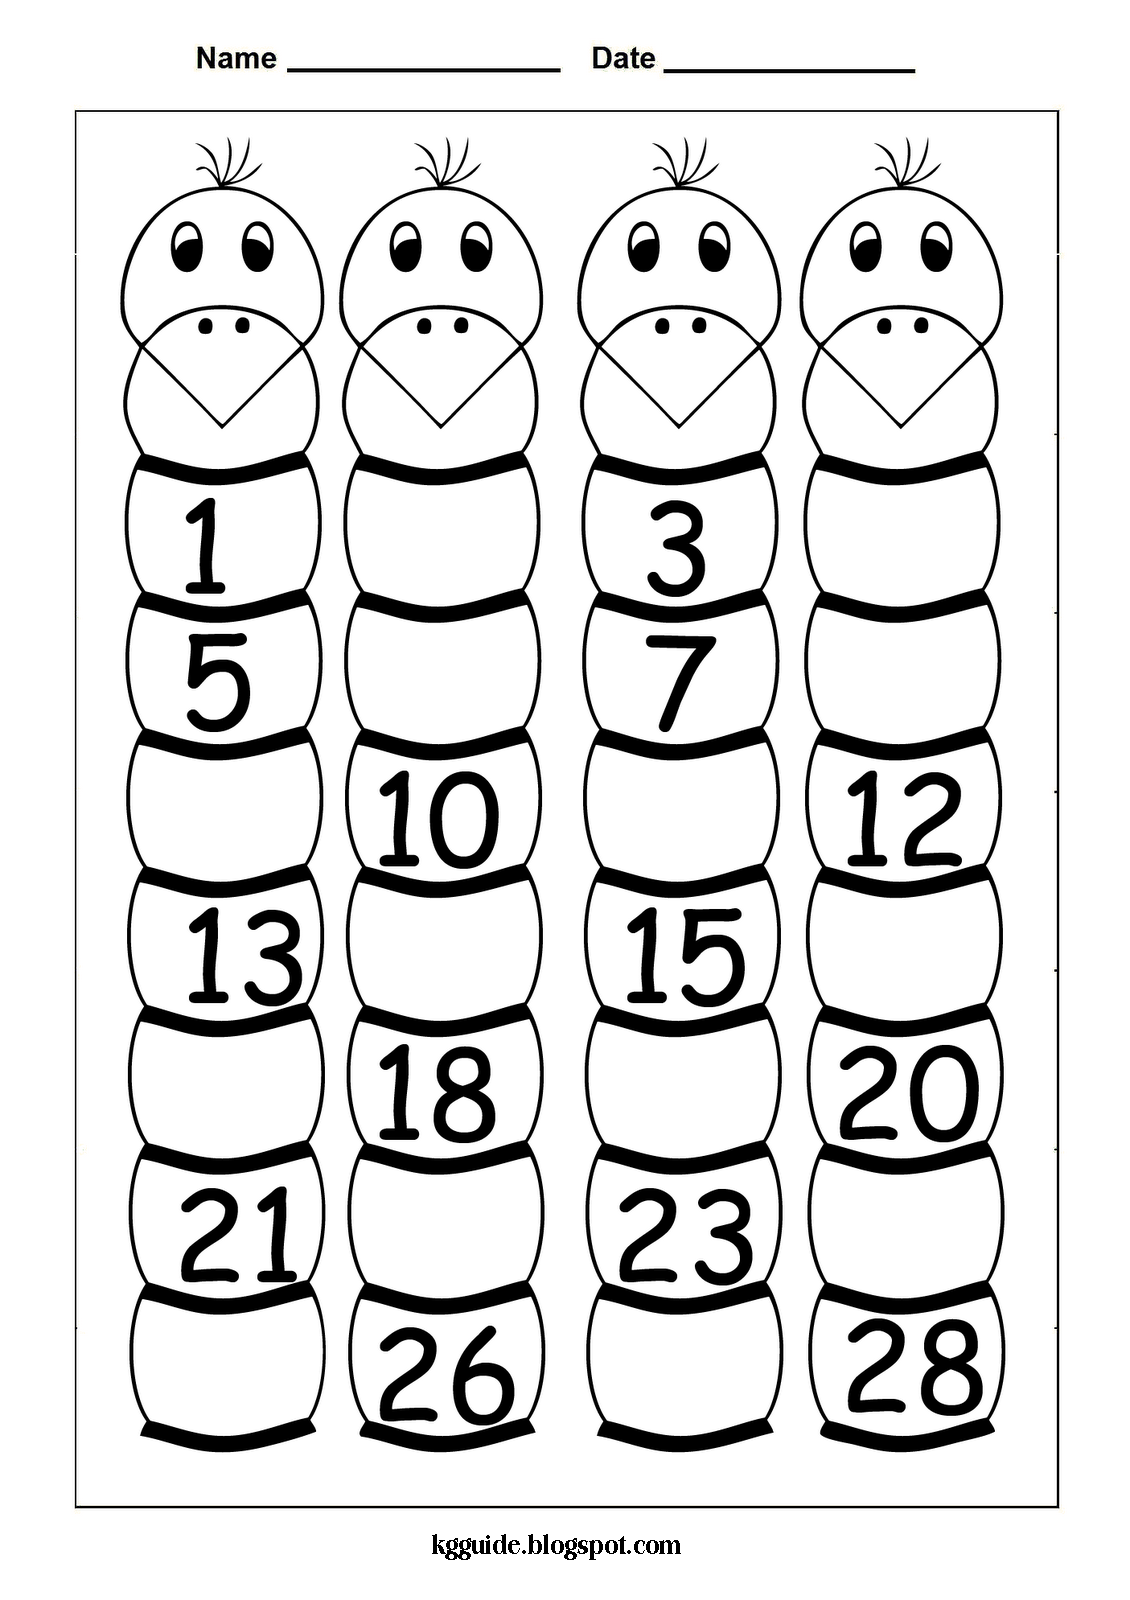 Kindergarten Missing Numbers Worksheets